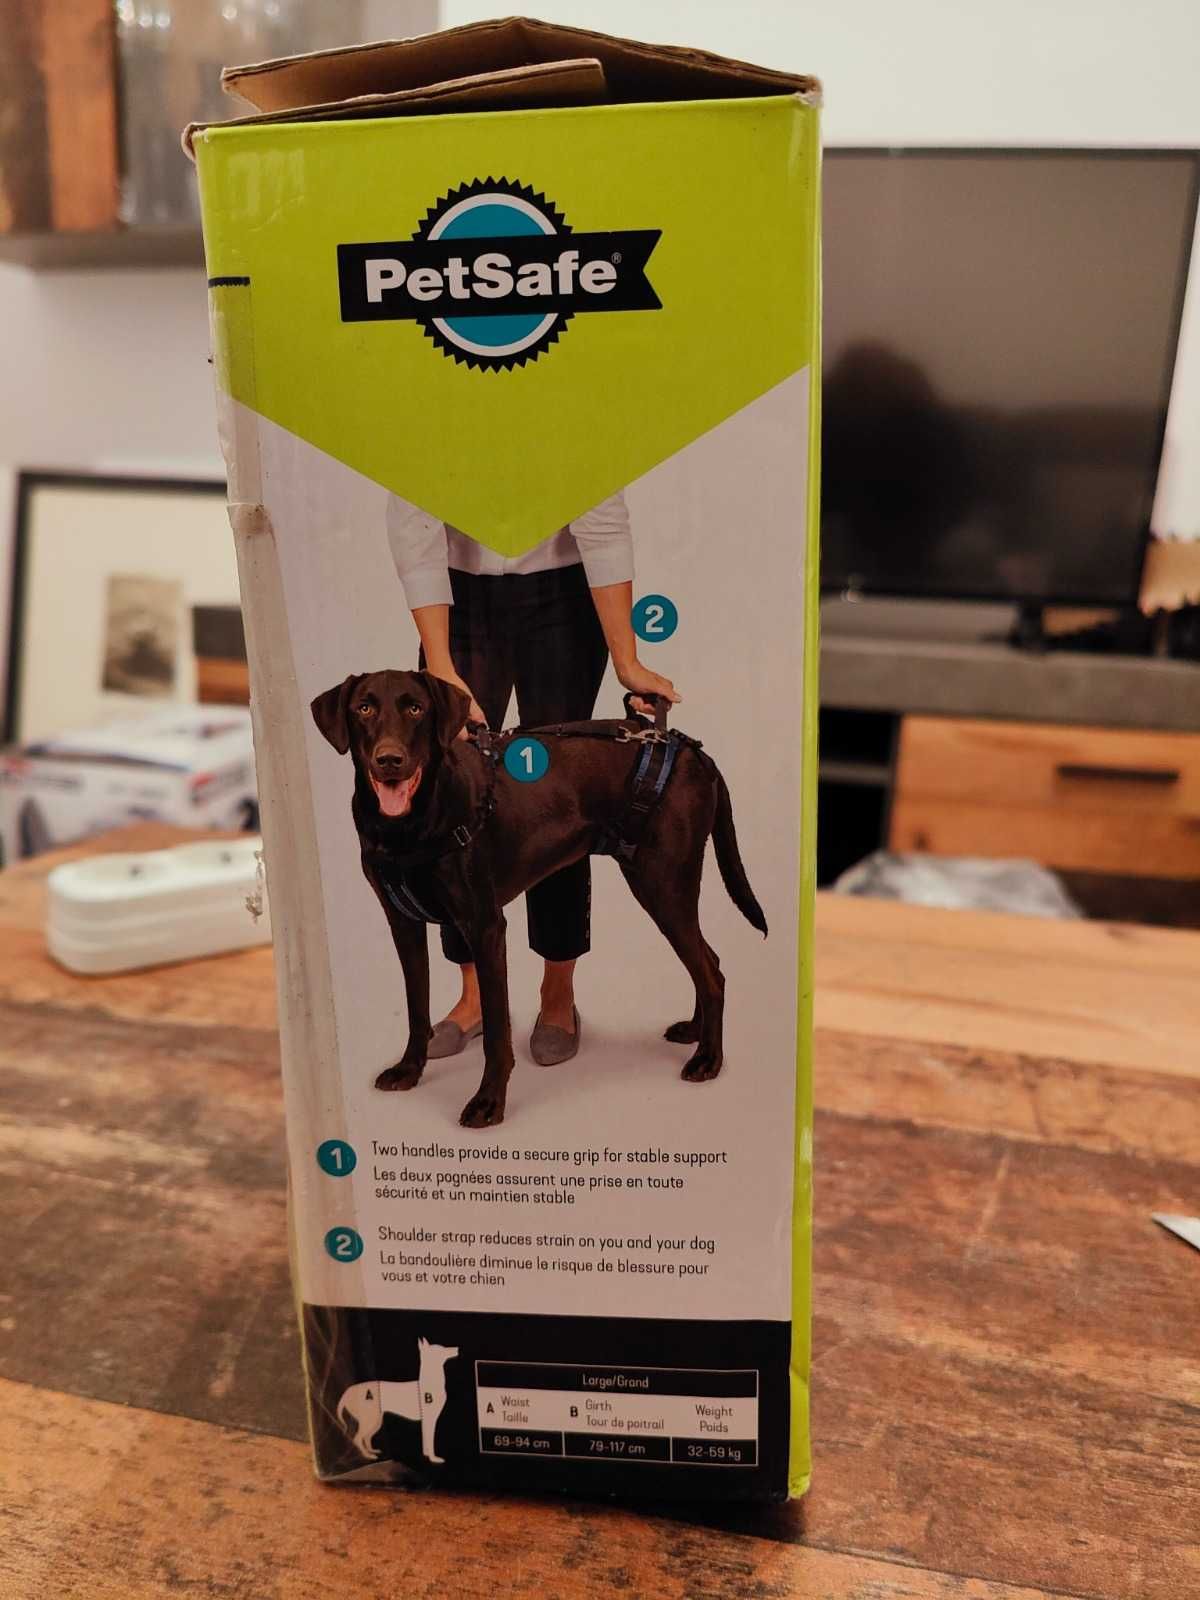 Ham curea de ridicare câini PetSafe CareLift + cadou surpriza